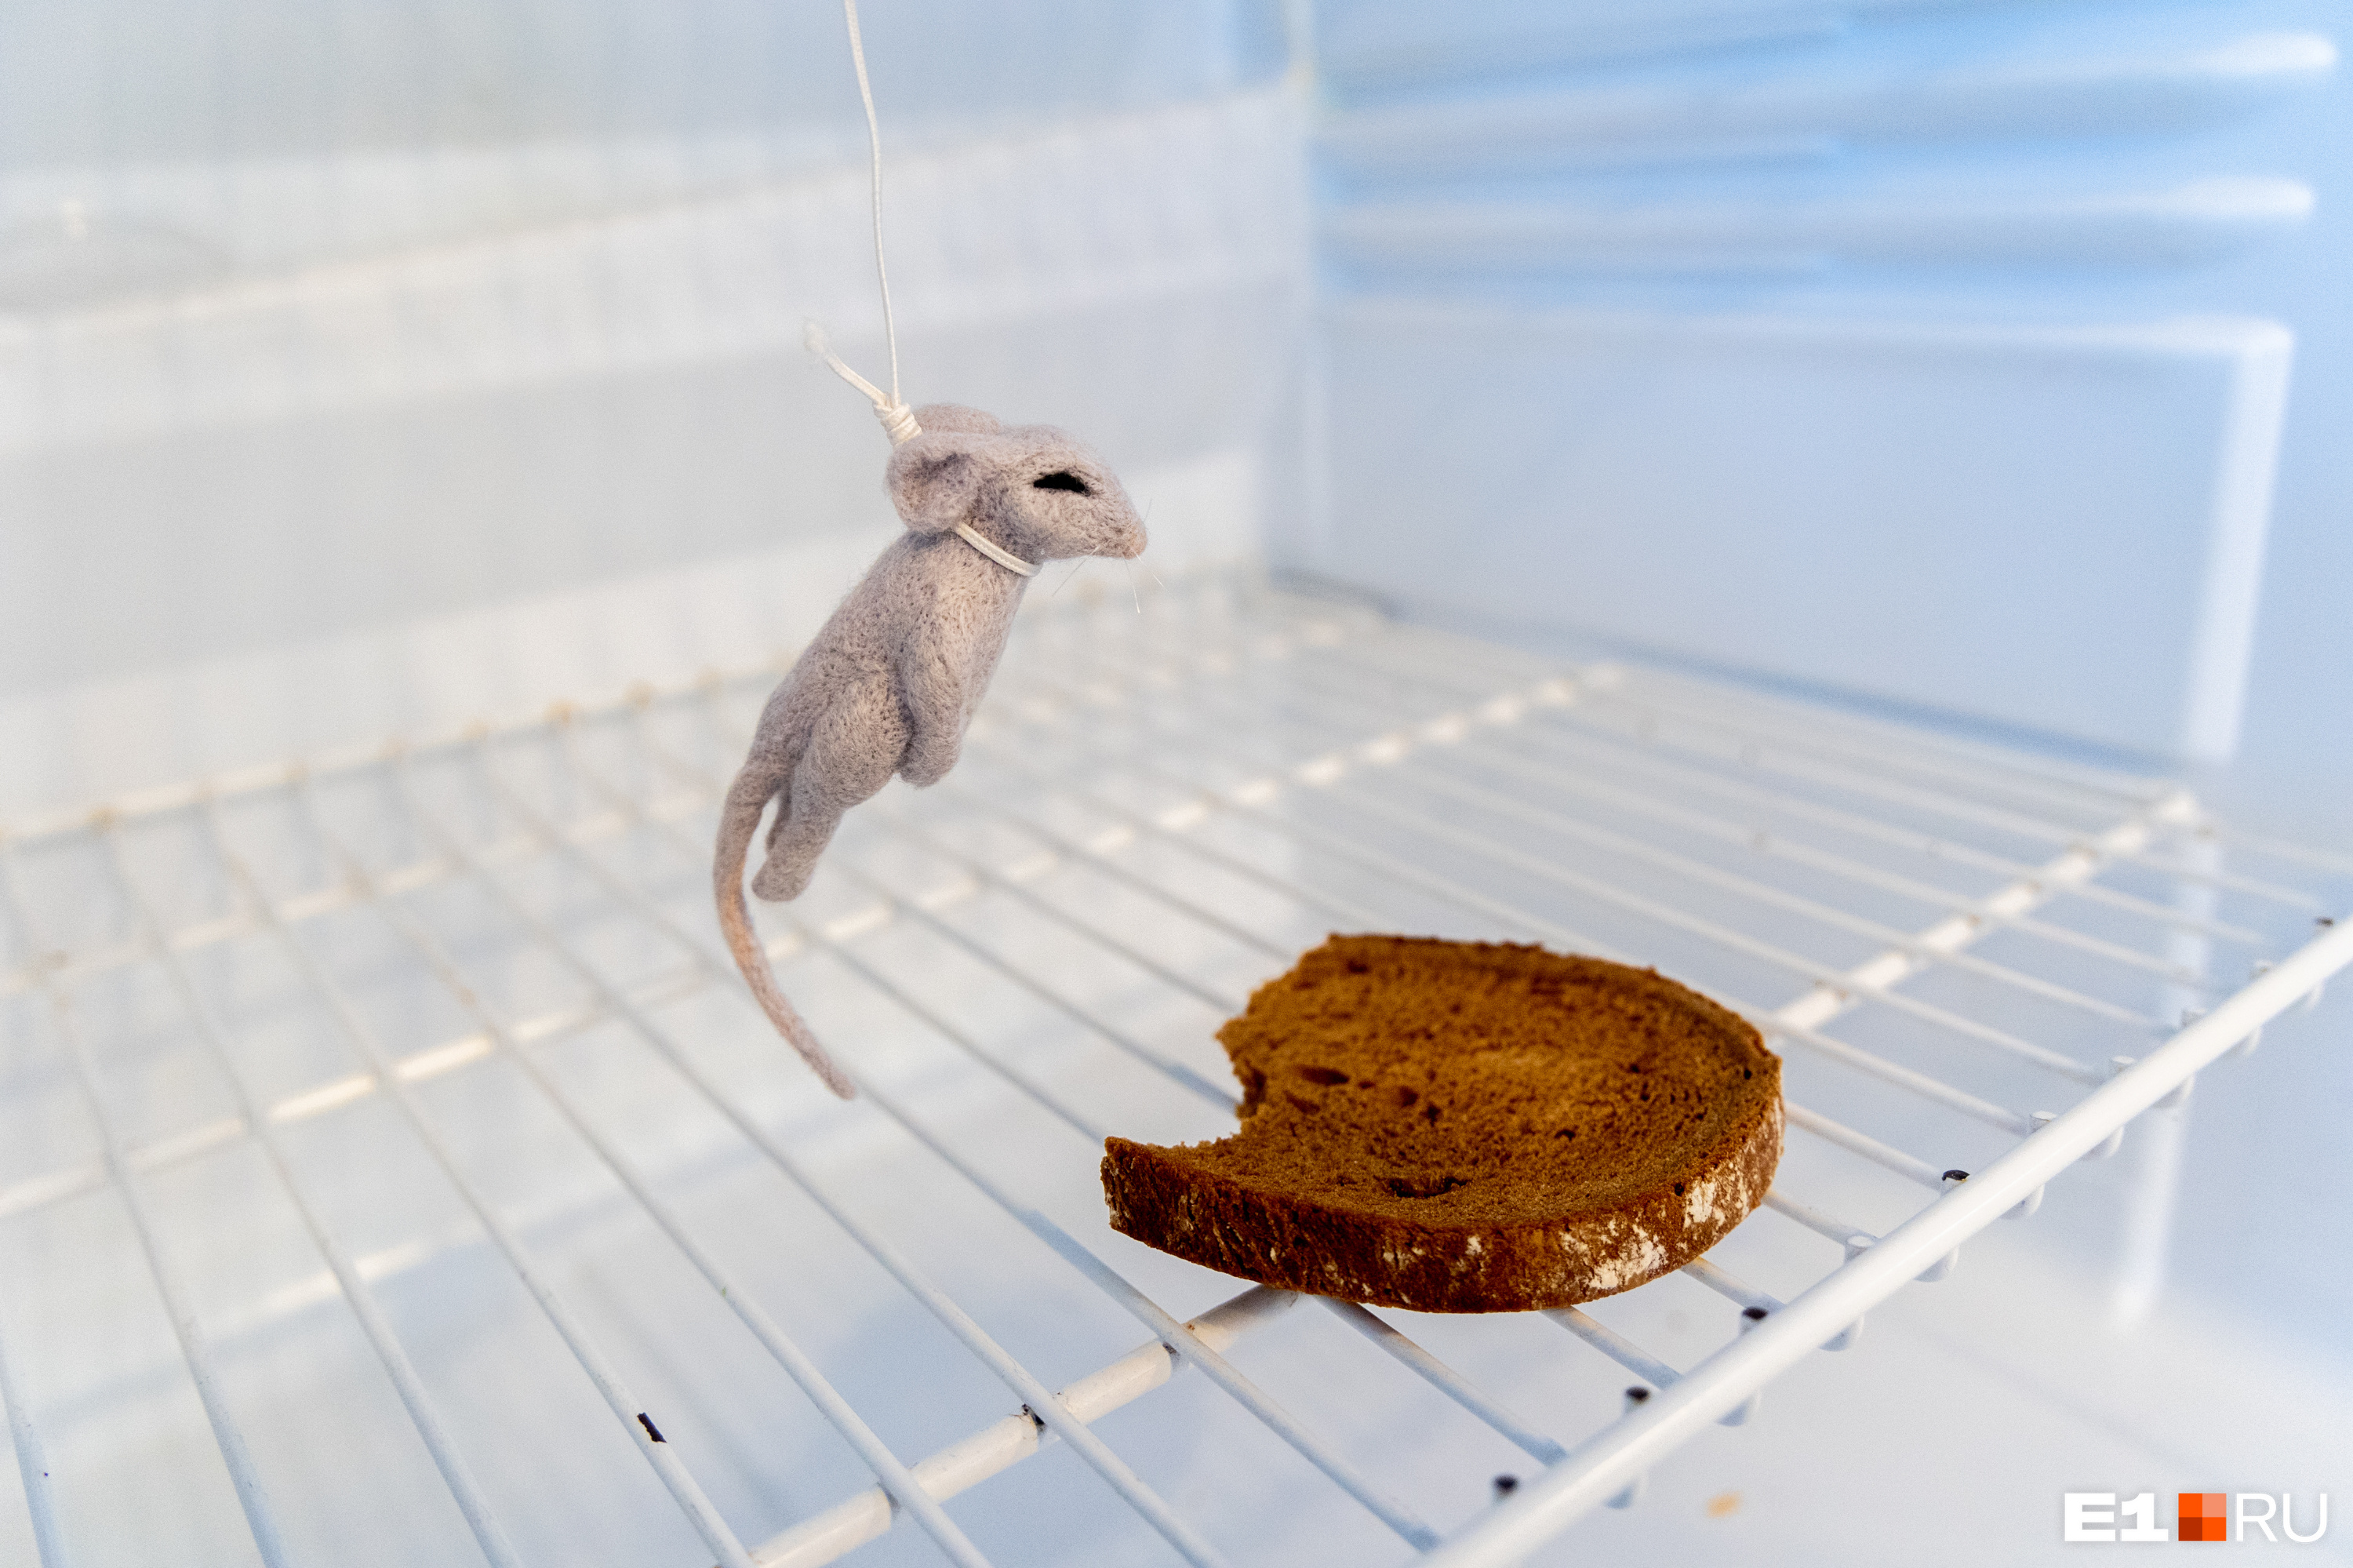 Полки ломятся от продуктов или мышь повесилась? Заглядываем в холодильники уральских пенсионеров